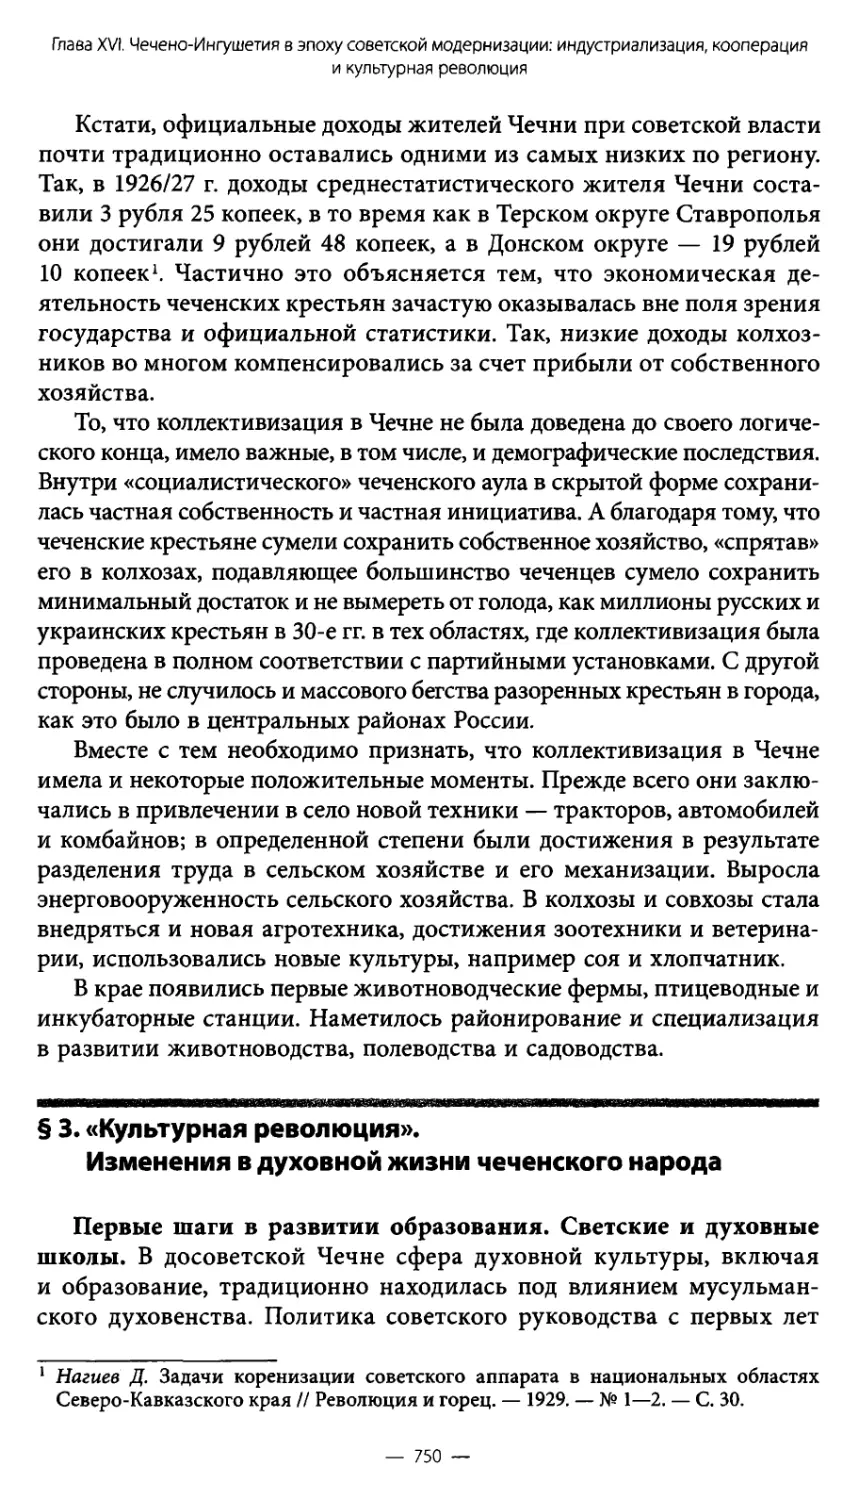 § 3. «Культурная революция». Изменения в духовной жизни чеченского народа